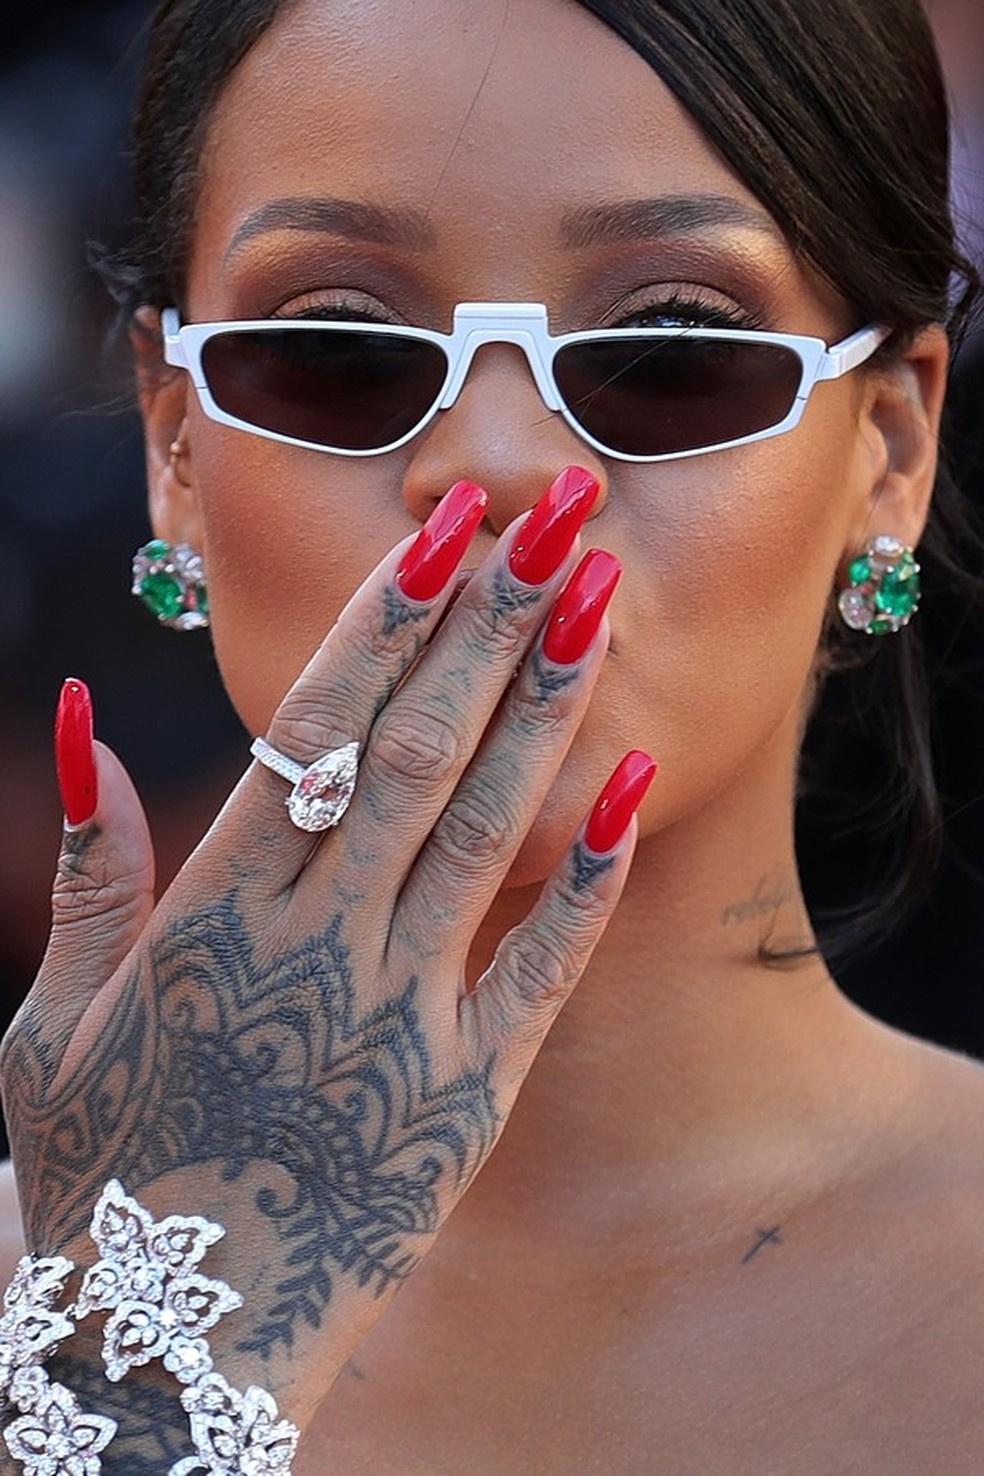 De Bruna a Rihanna, relembre looks do estilista Virgil Abloh